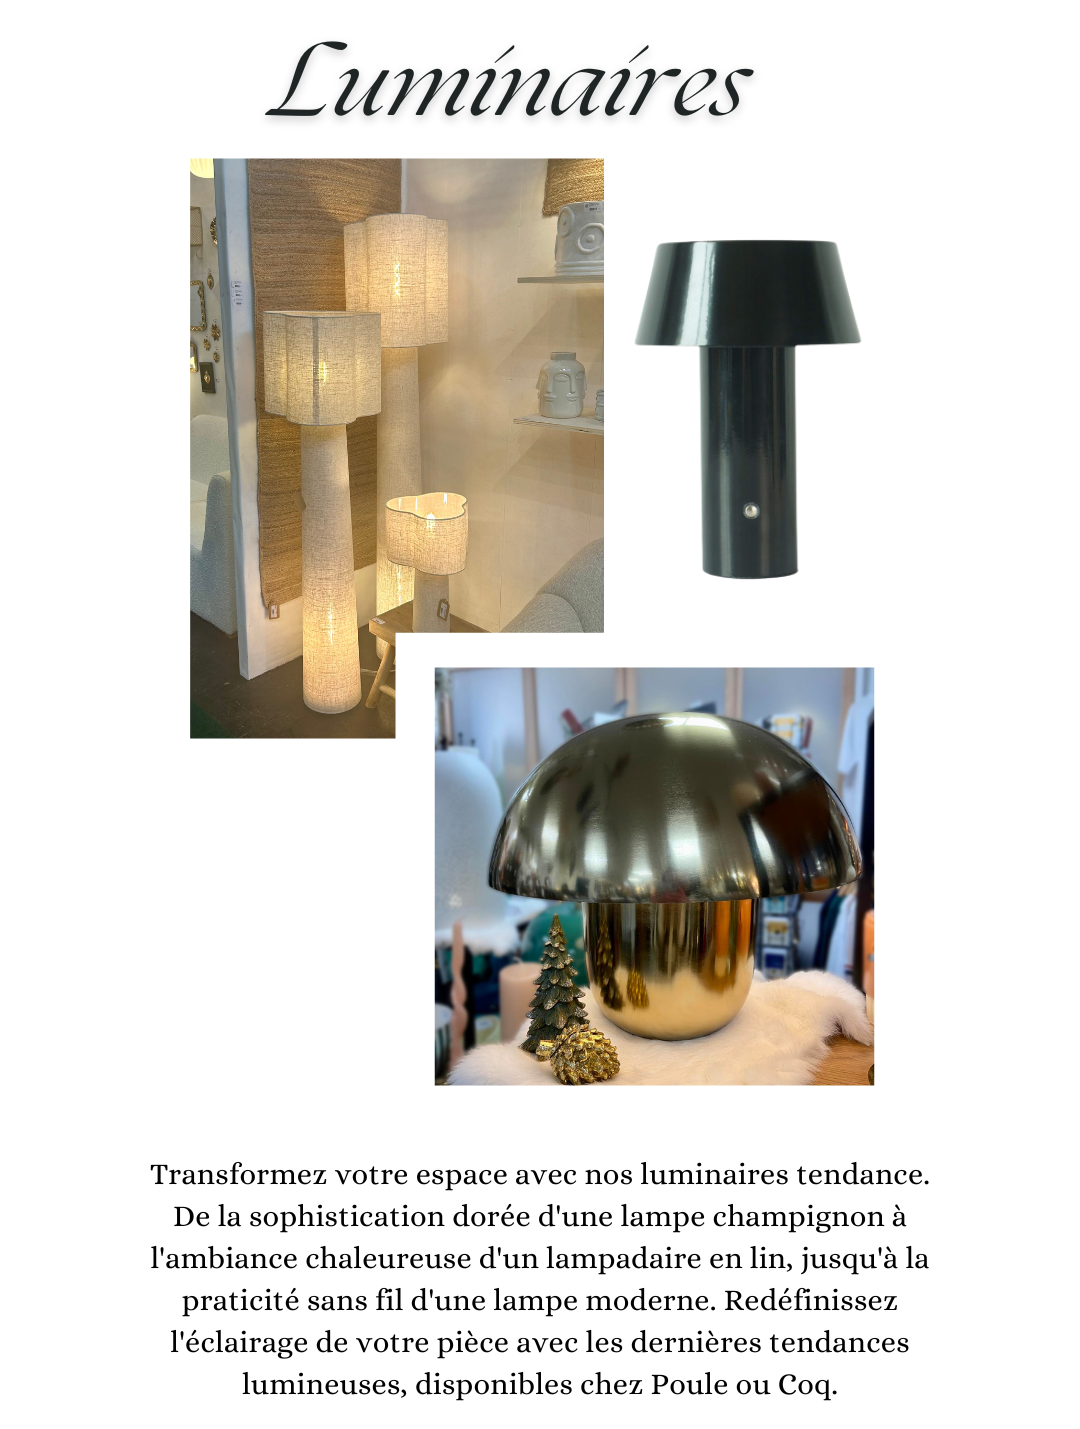 Les nouveaux luminaires : Transformez votre espace avec nos luminaires tendance. De la sophistication dorée d'une lampe champignon à l'ambiance chaleureuse d'un lampadaire en lin, jusqu'à la praticité sans fil d'une lampe moderne. Redéfinissez l'éclairage de votre pièce avec les dernières tendances lumineuses, disponibles chez Poule ou Coq.